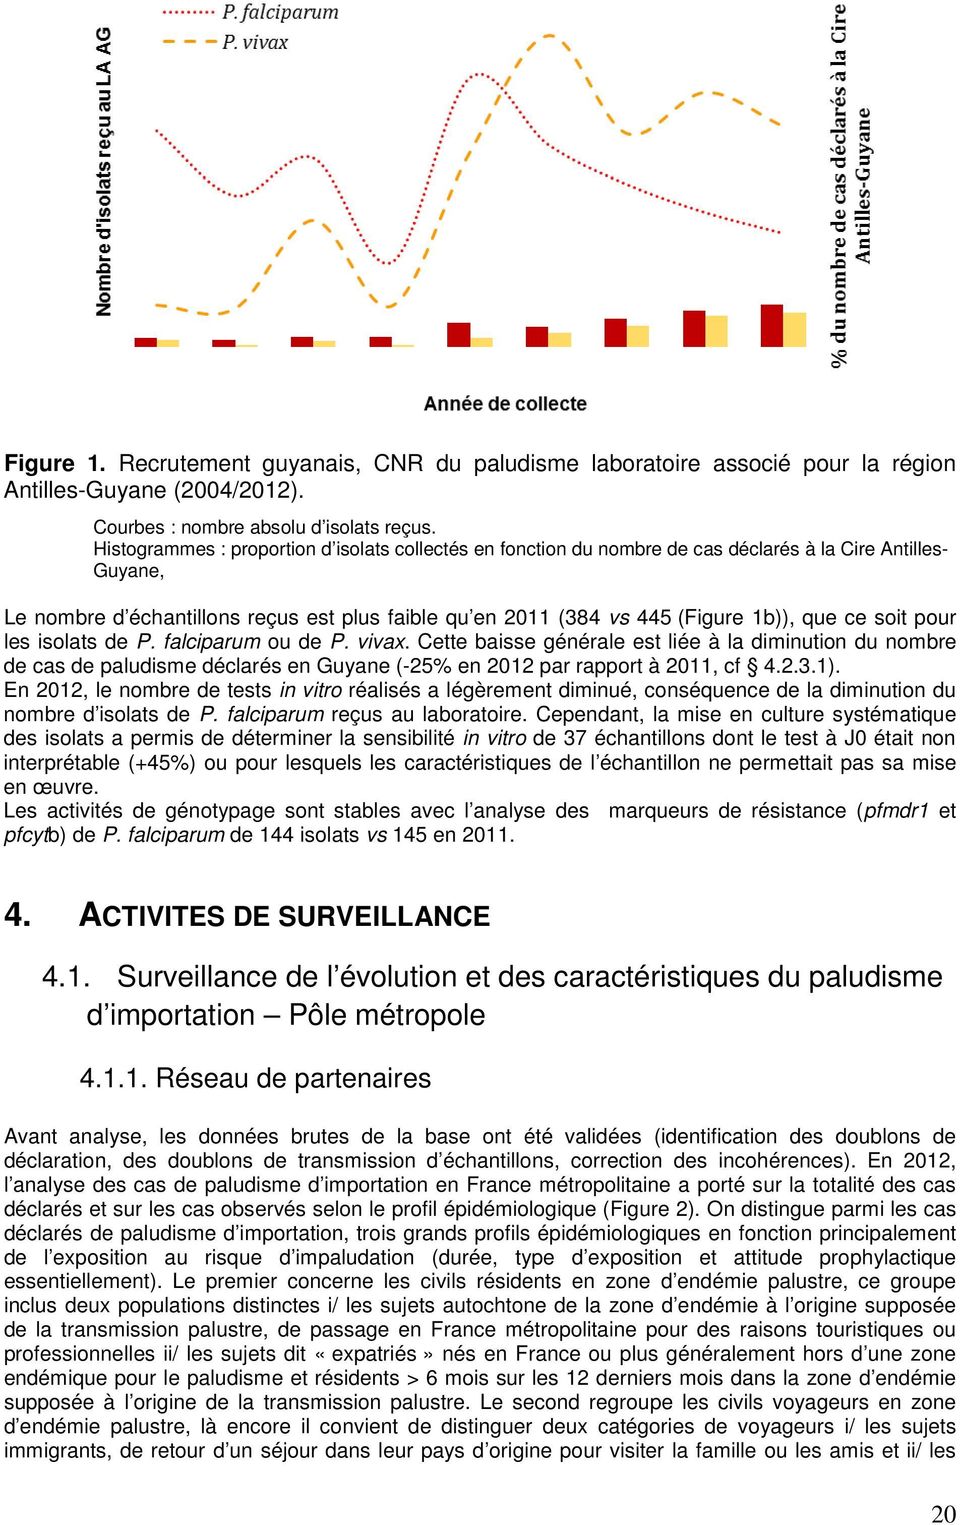 ce soit pour les isolats de P. falciparum ou de P. vivax. Cette baisse générale est liée à la diminution du nombre de cas de paludisme déclarés en Guyane (-25% en 2012 par rapport à 2011, cf 4.2.3.1).